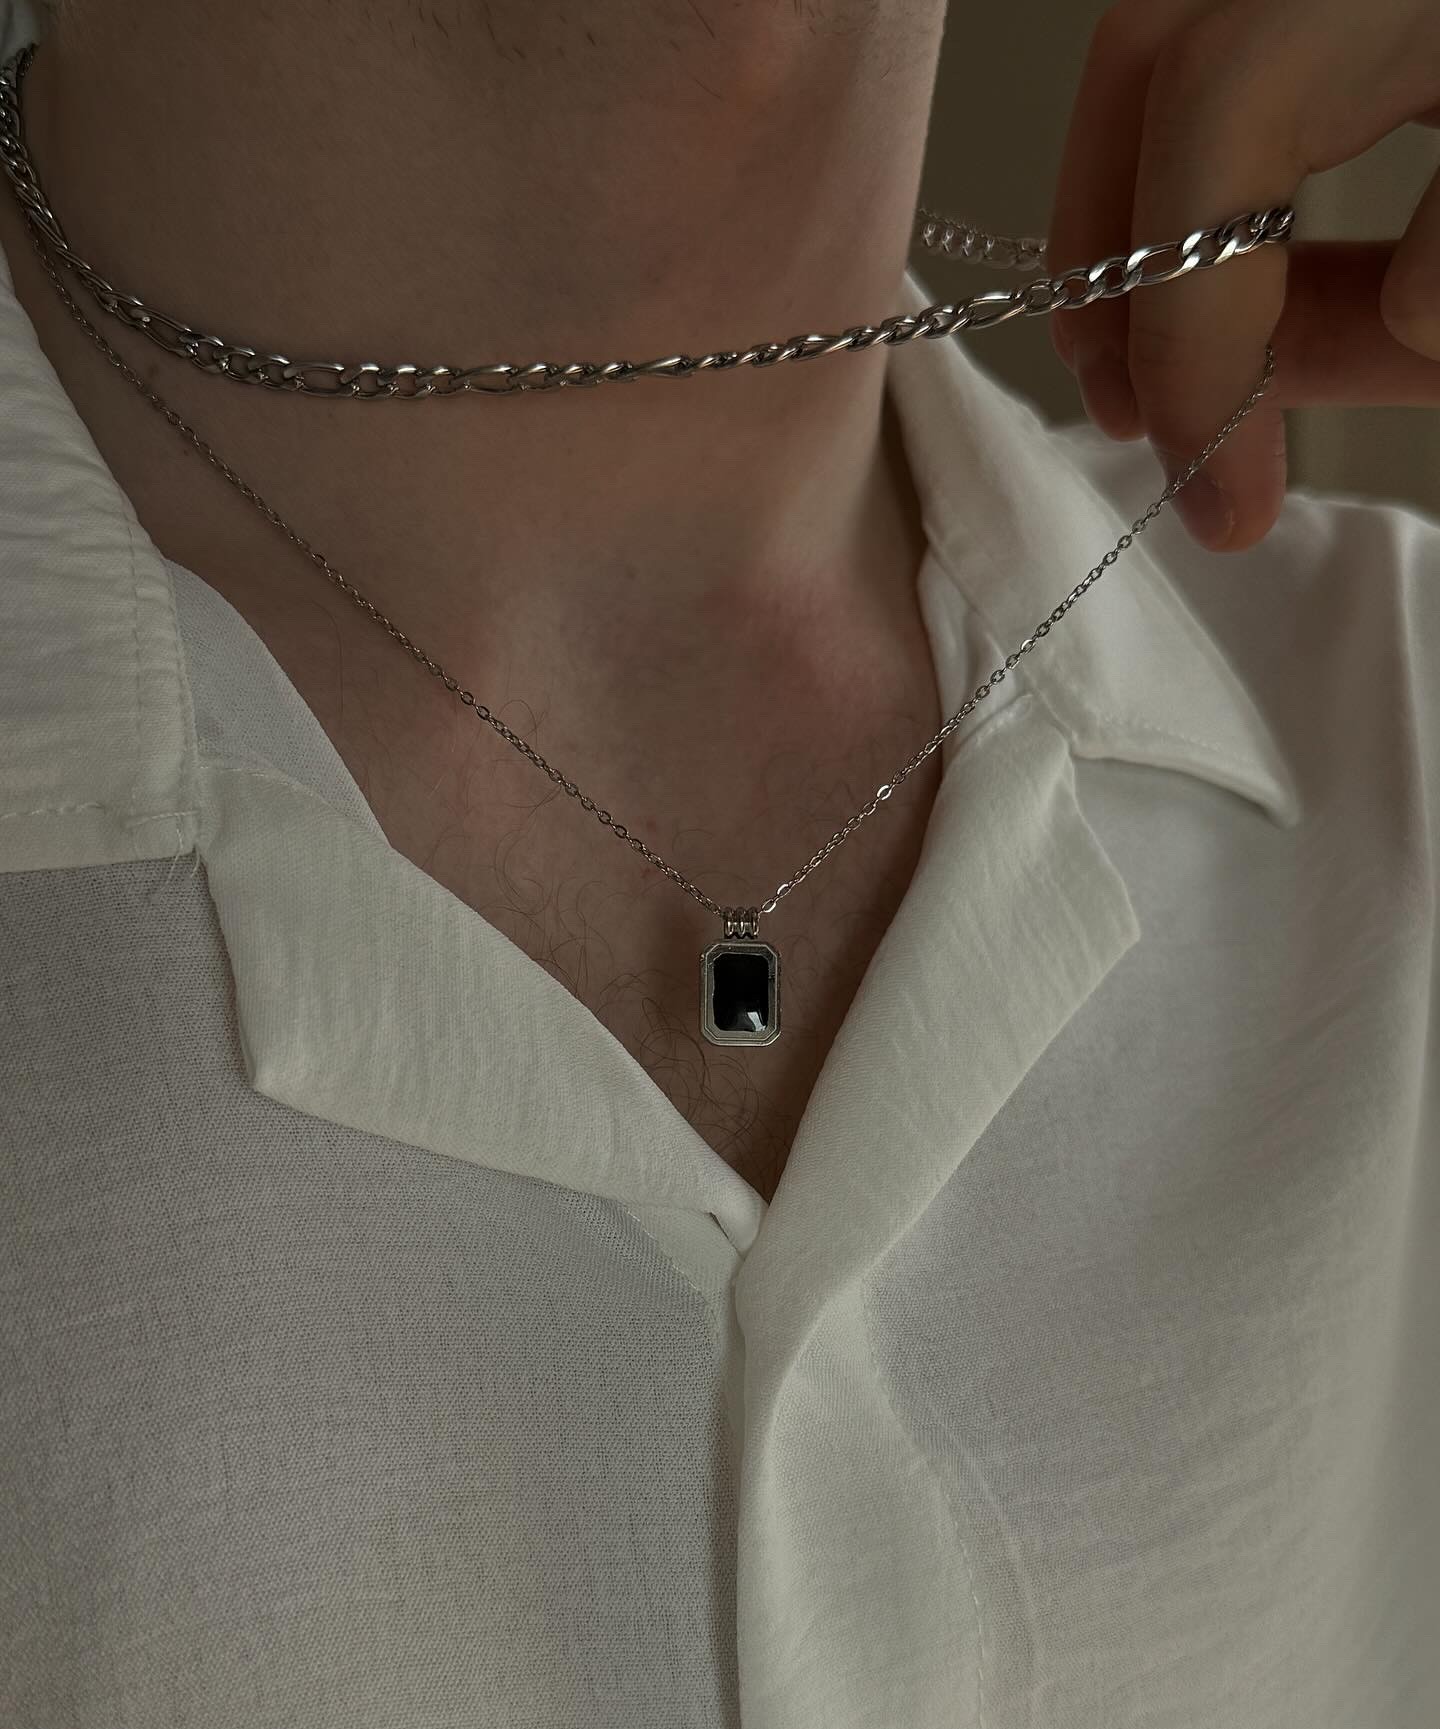 Figaro Chain Black Stone Necklace